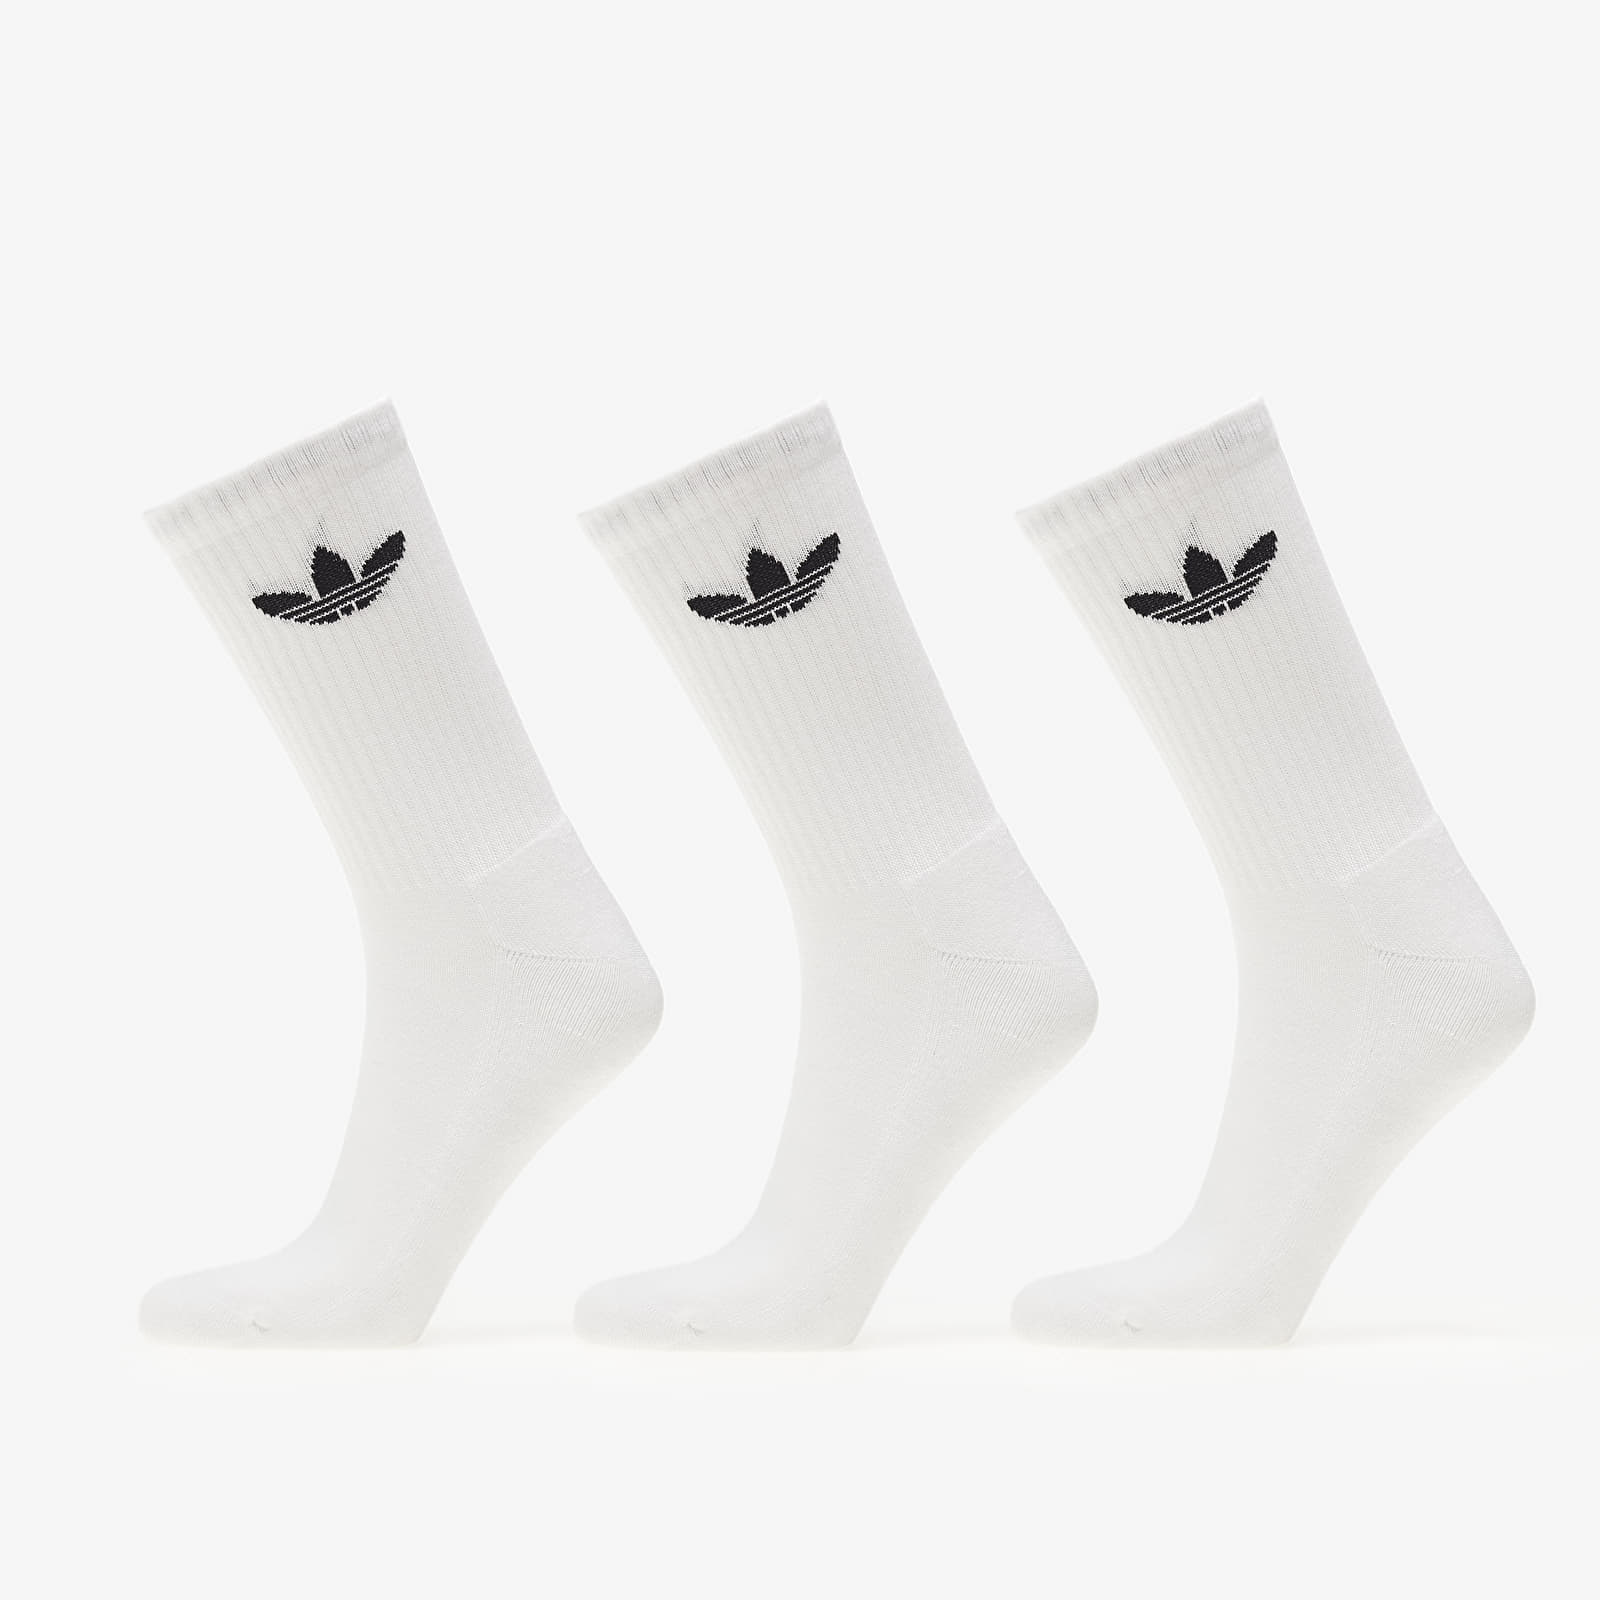 Socks adidas Trefoil Cushion Crew Socks 3-Pack White